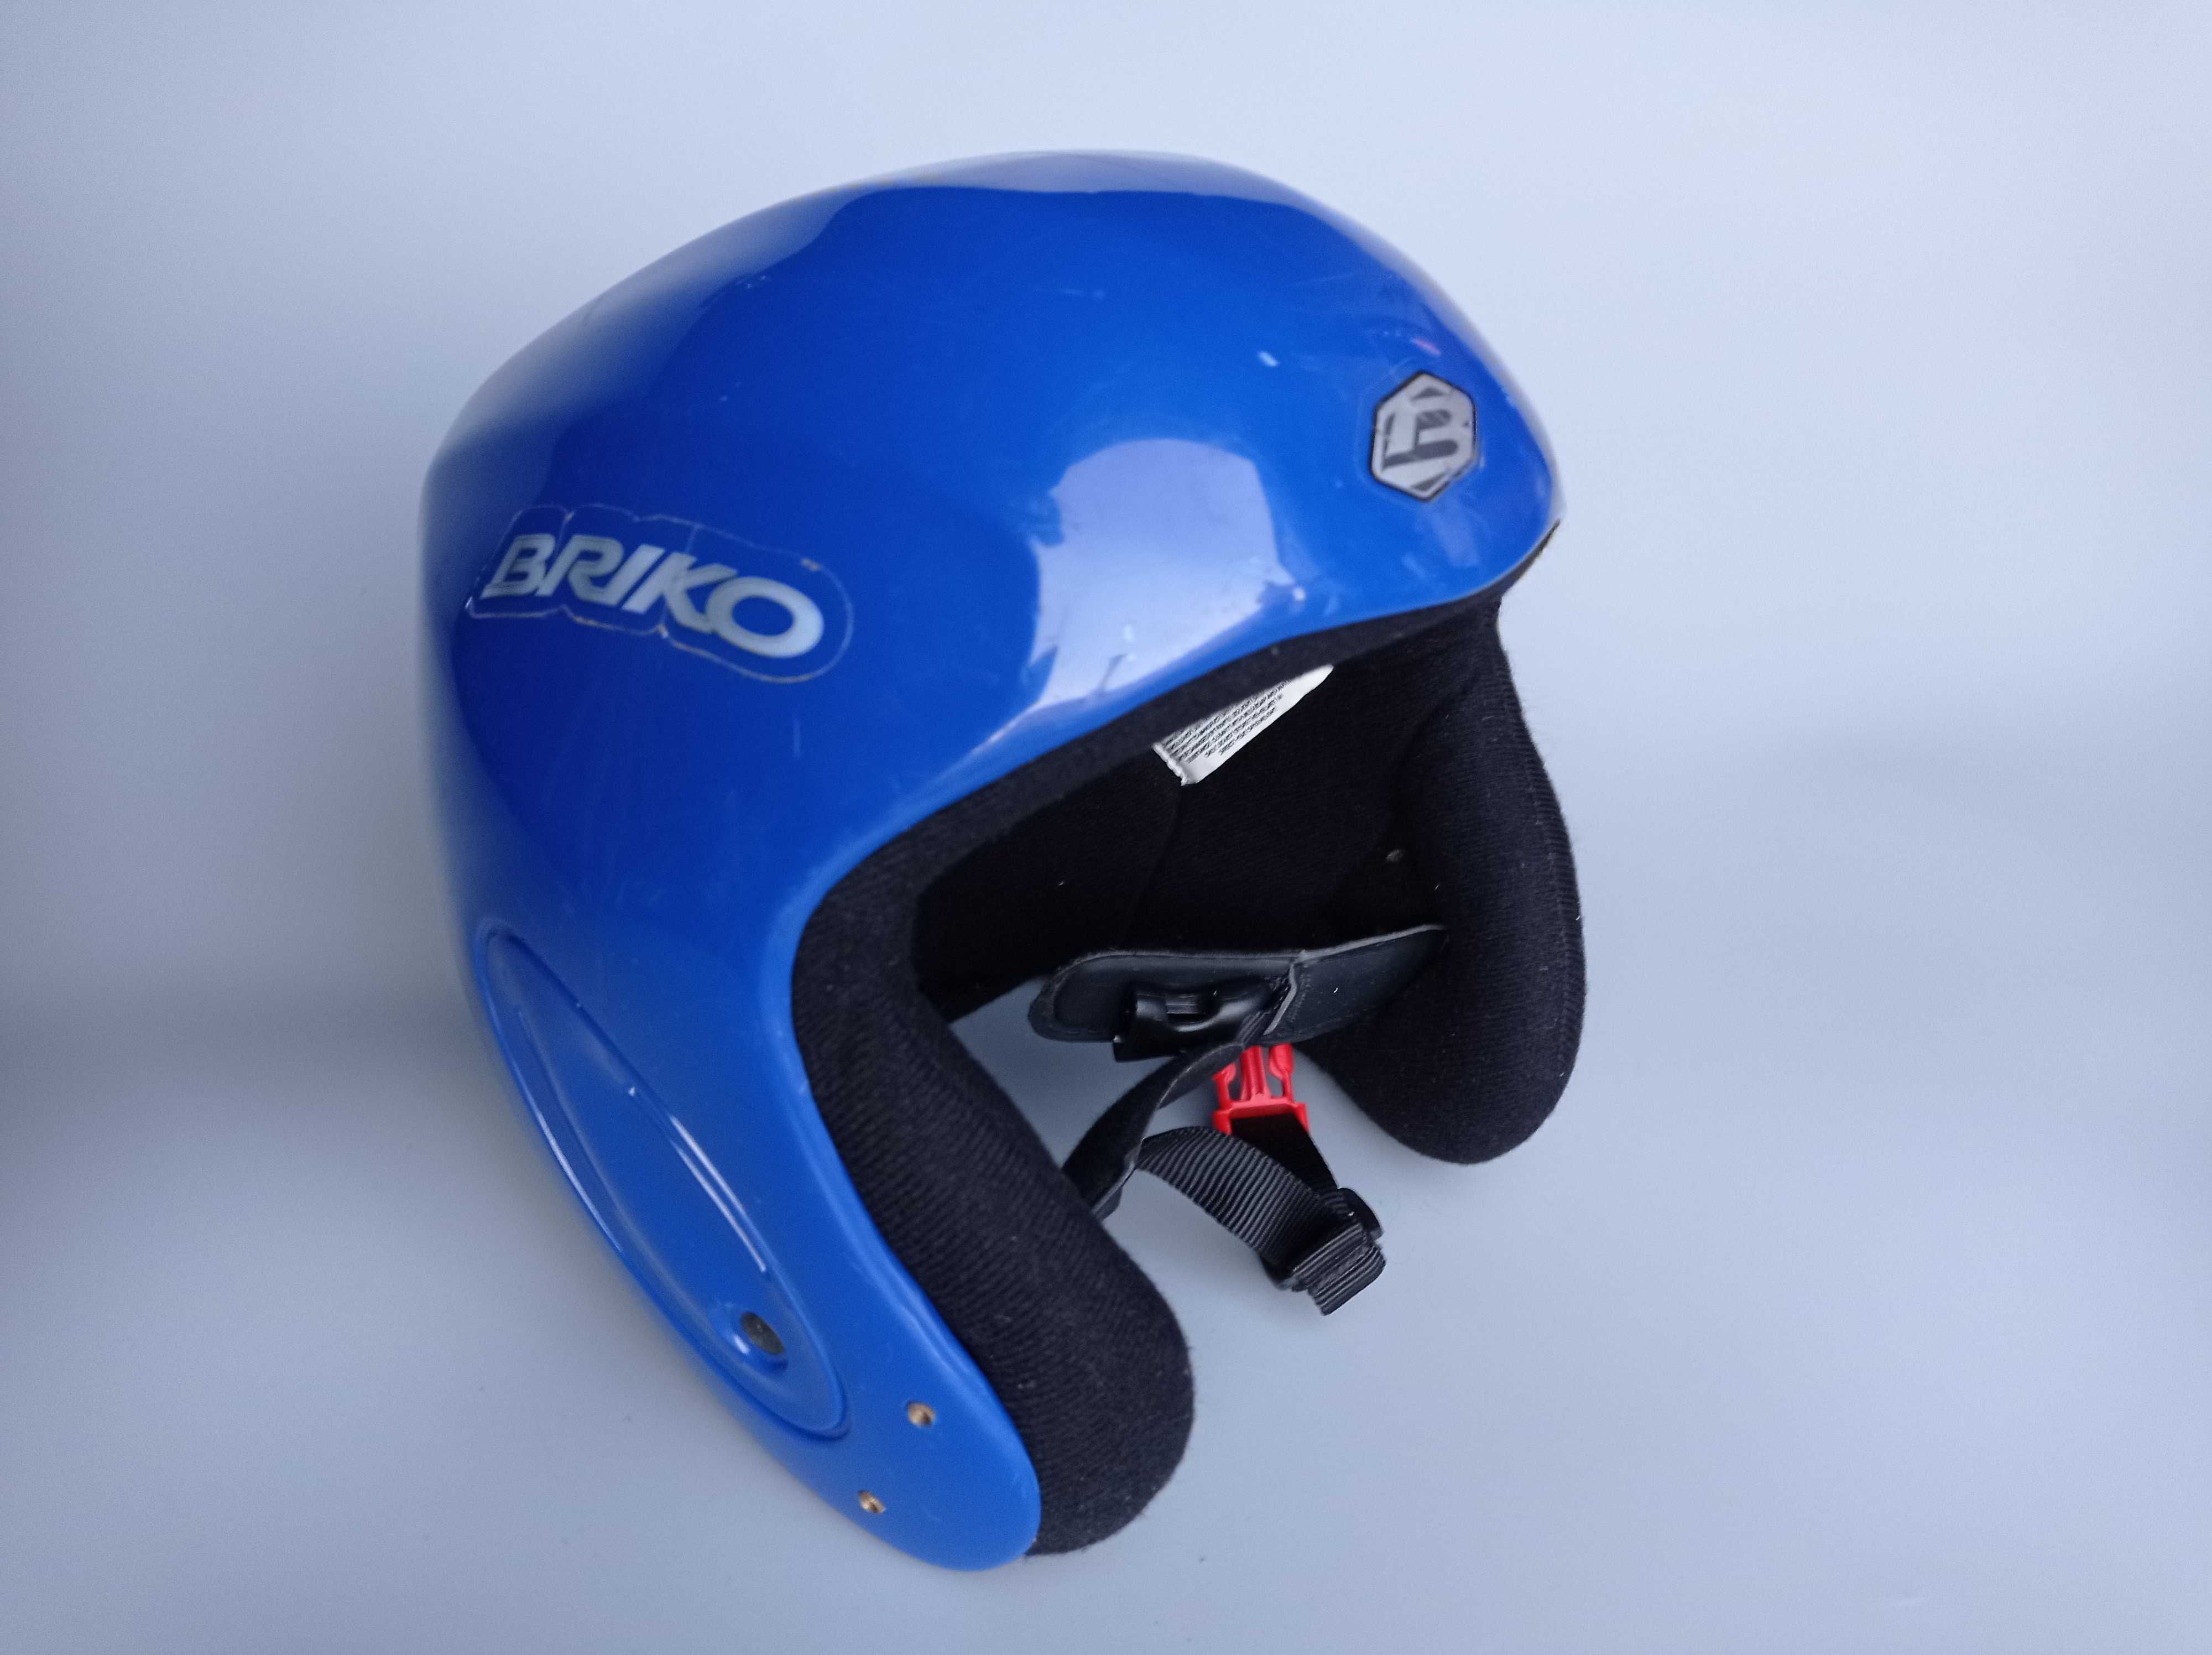 Детский горнолыжный сноубордический шлем Briko, размер S 54см.